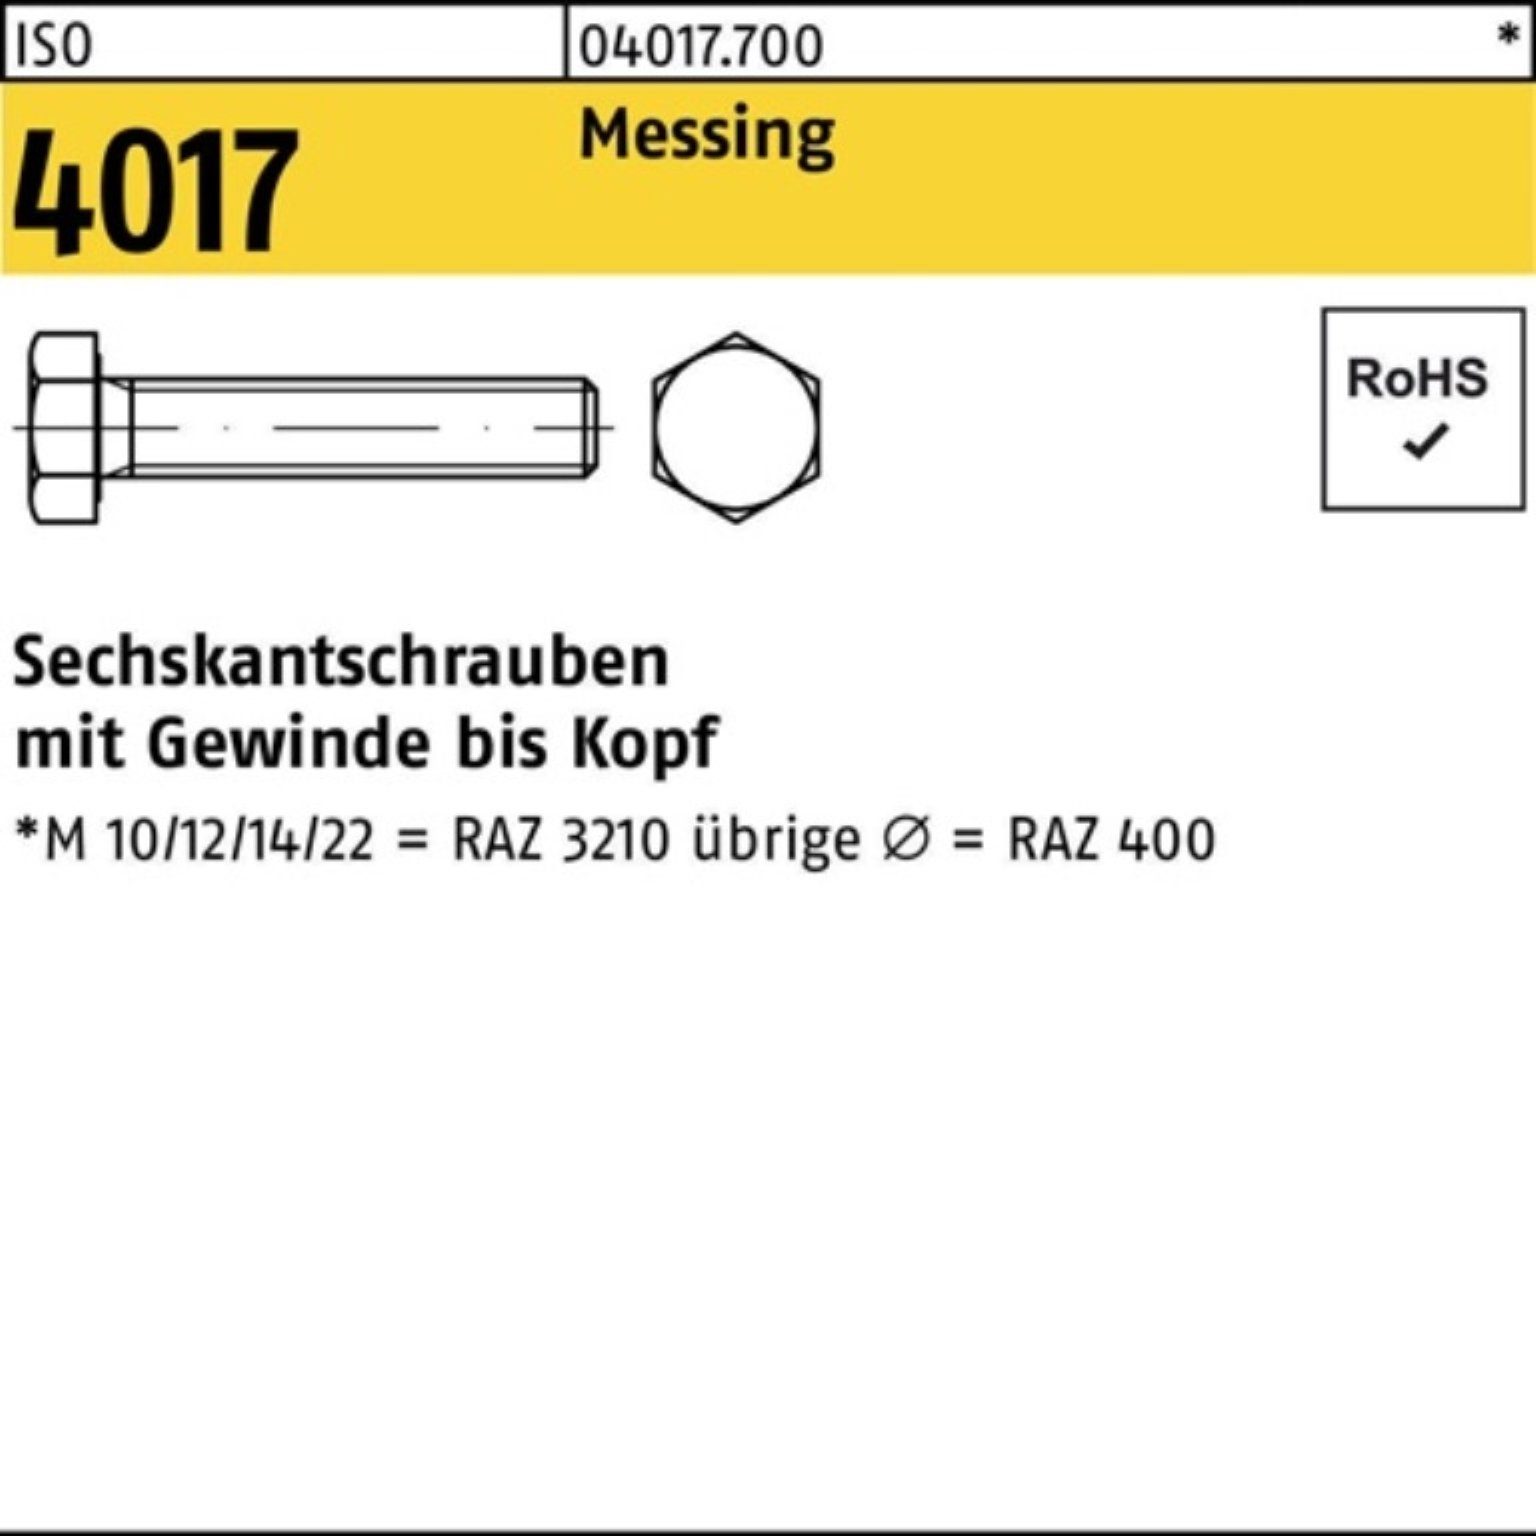 Bufab Sechskantschraube 100 Stück Pack VG 100er Messing ISO ISO 4017 Sechskantschraube M8x 55